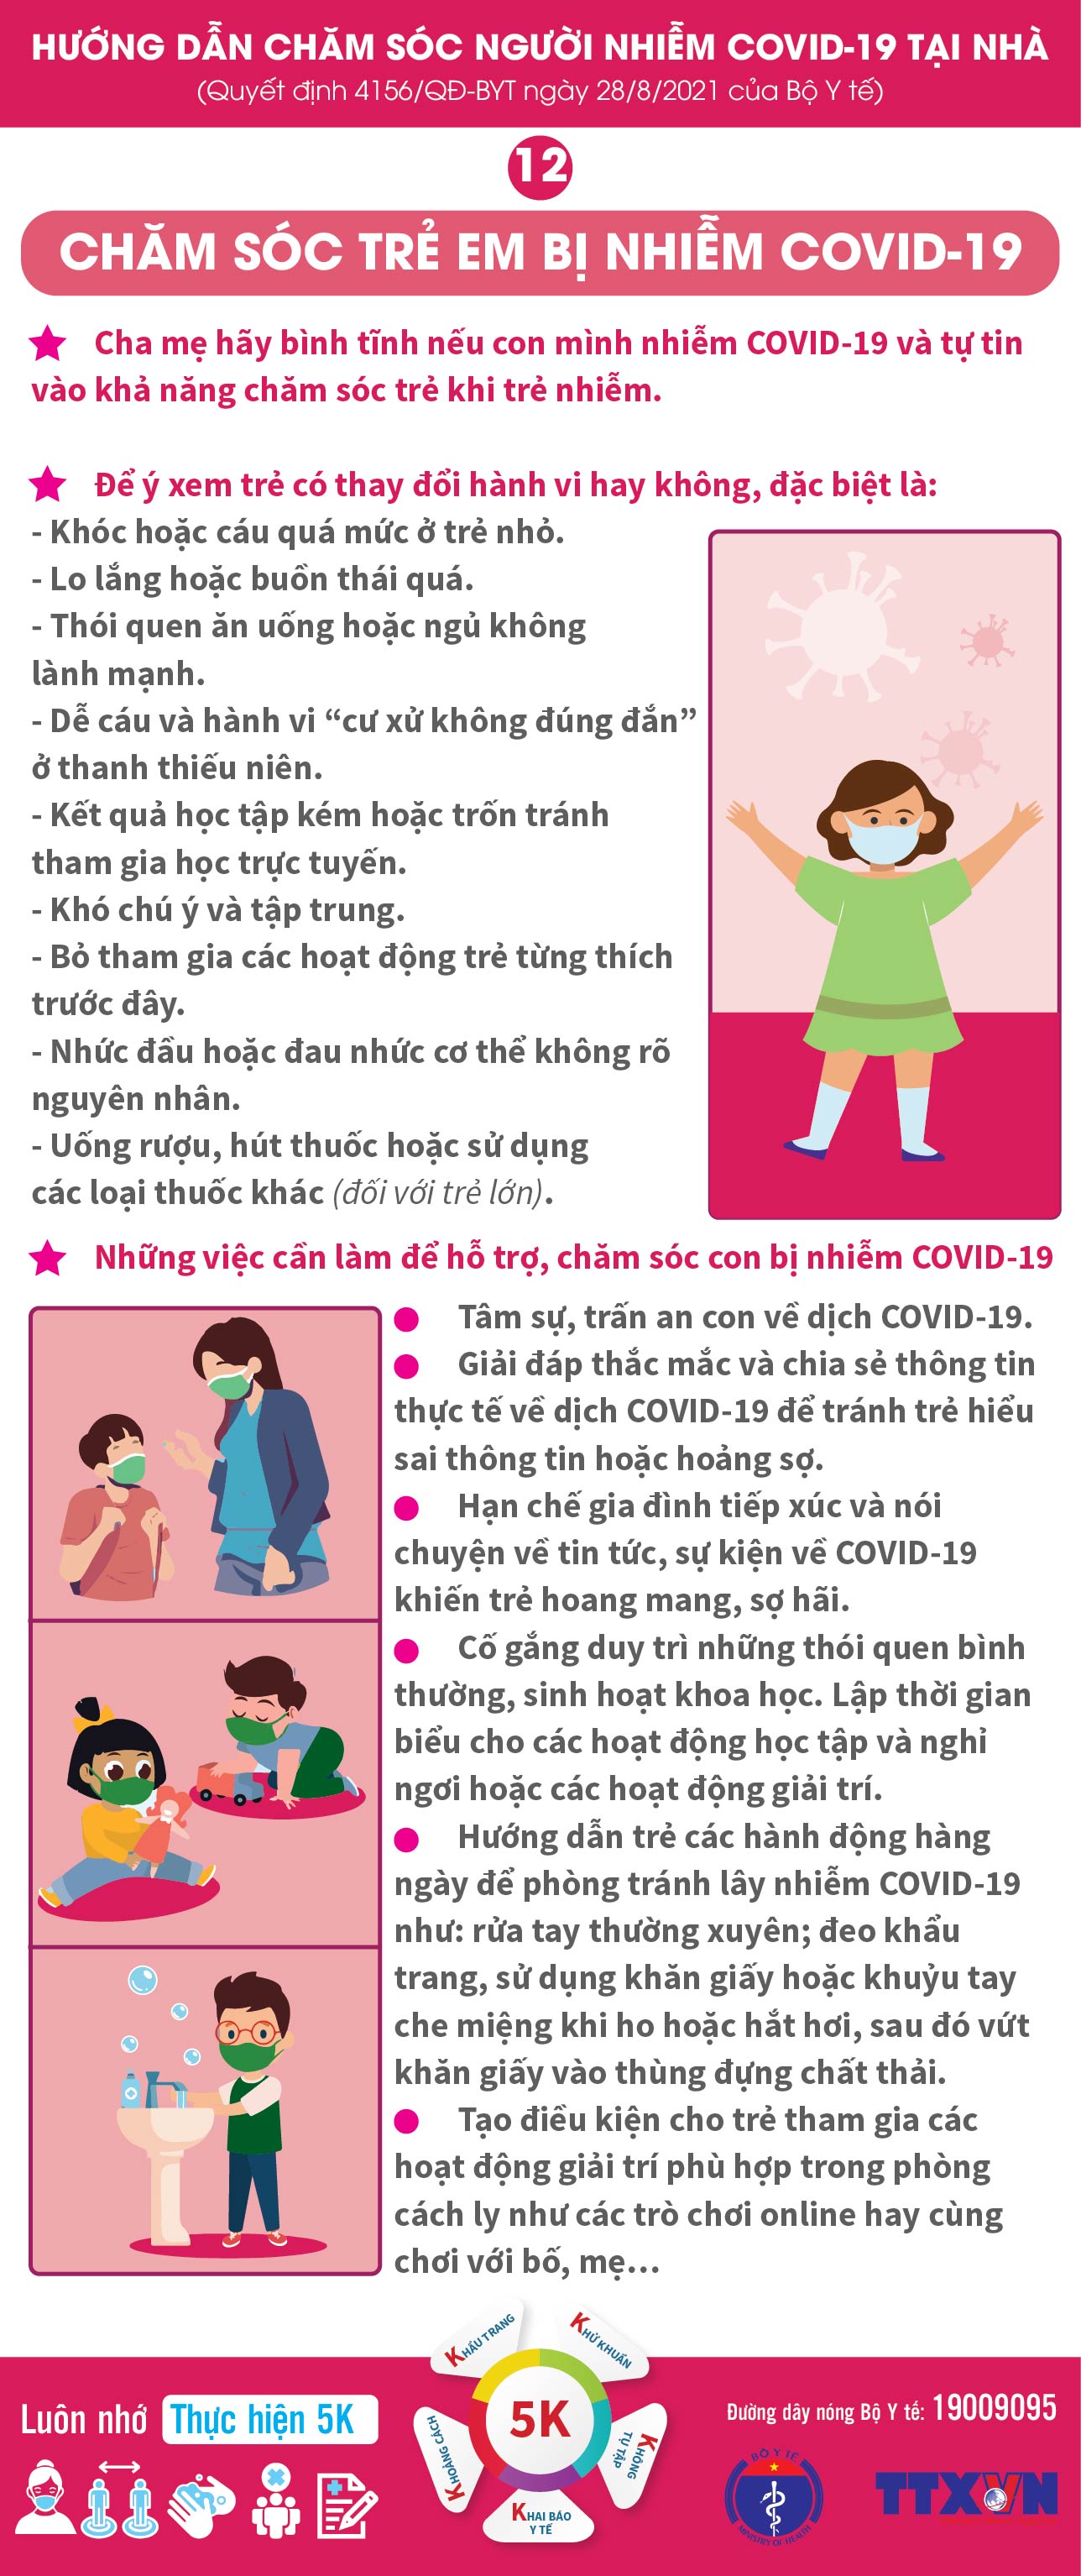 Infographic hướng dẫn chăm sóc người nhiễm Covid-19 tại nhà  - Ảnh 13.